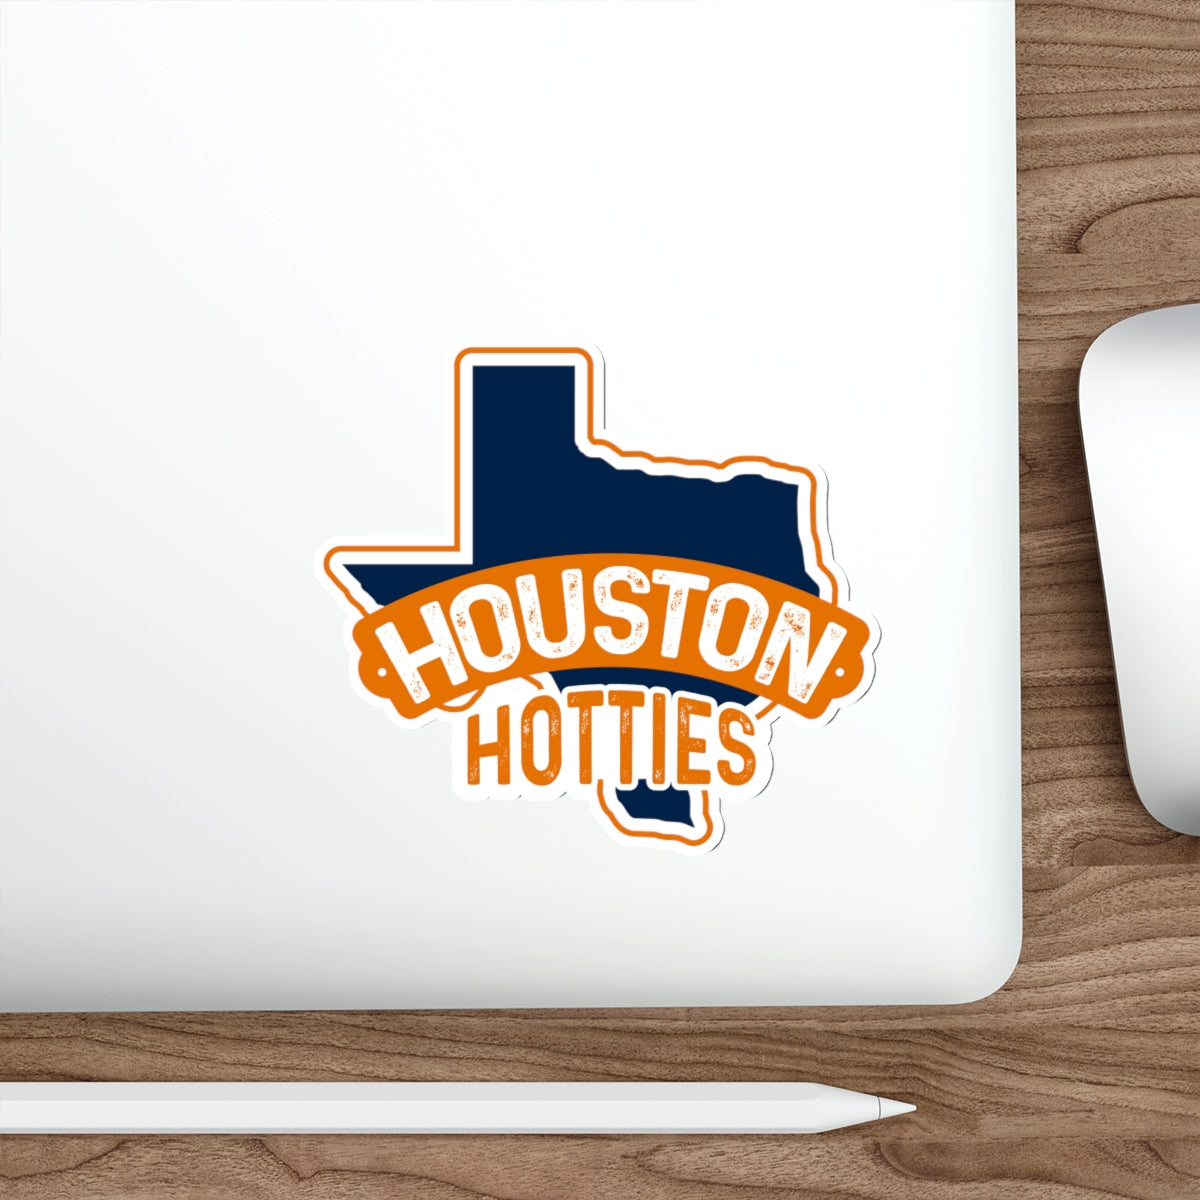 Houston Hotties Sticker